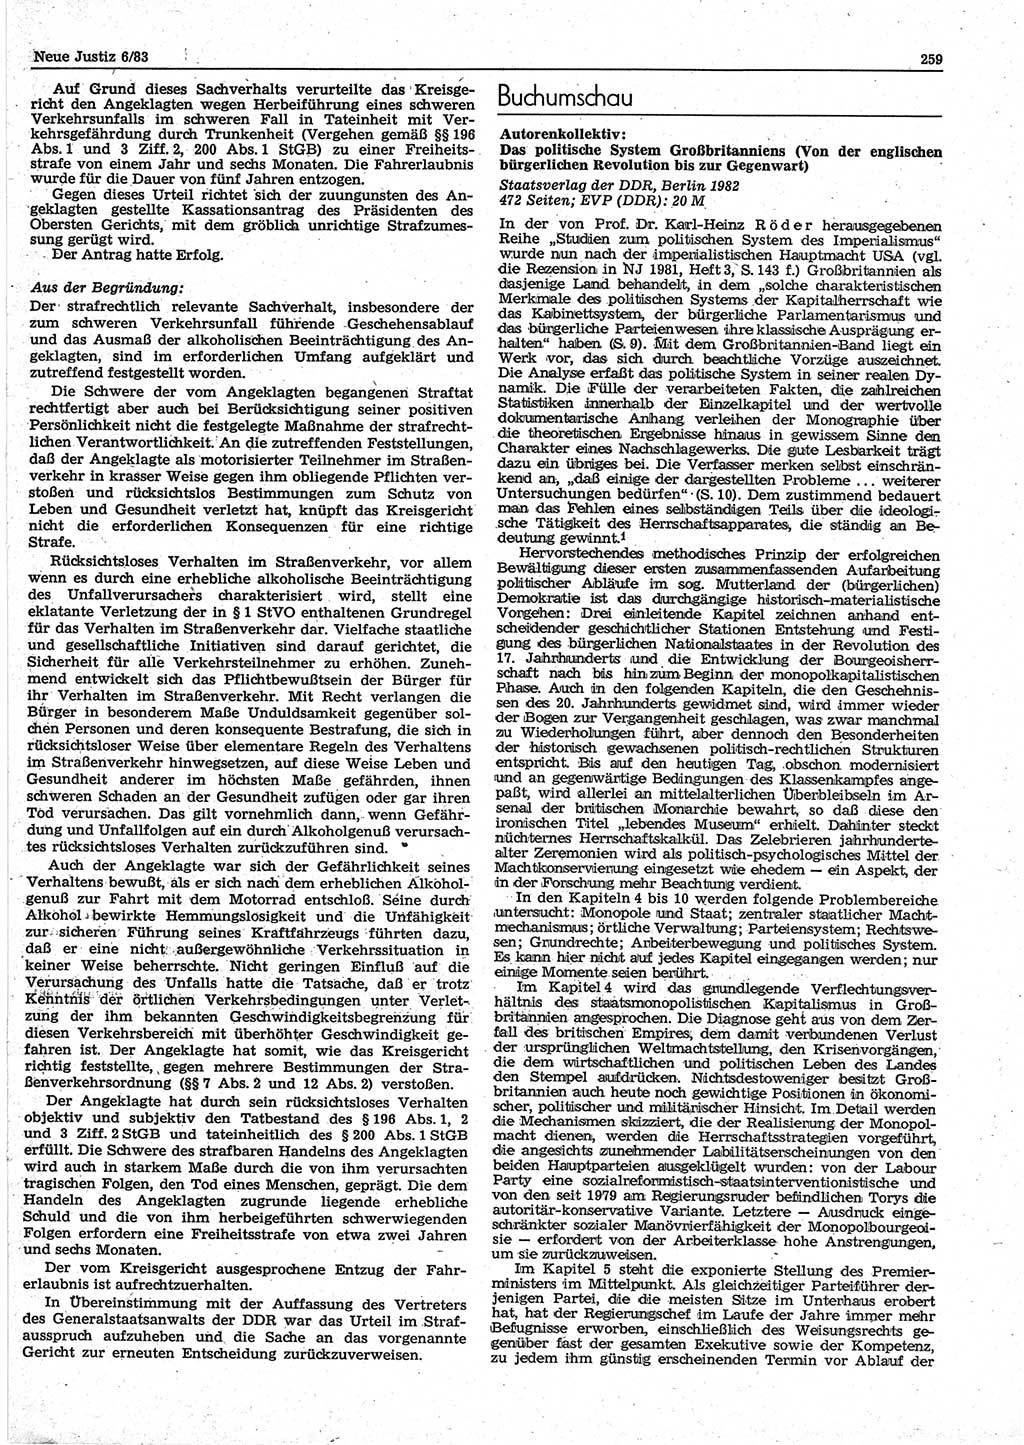 Neue Justiz (NJ), Zeitschrift für sozialistisches Recht und Gesetzlichkeit [Deutsche Demokratische Republik (DDR)], 37. Jahrgang 1983, Seite 259 (NJ DDR 1983, S. 259)